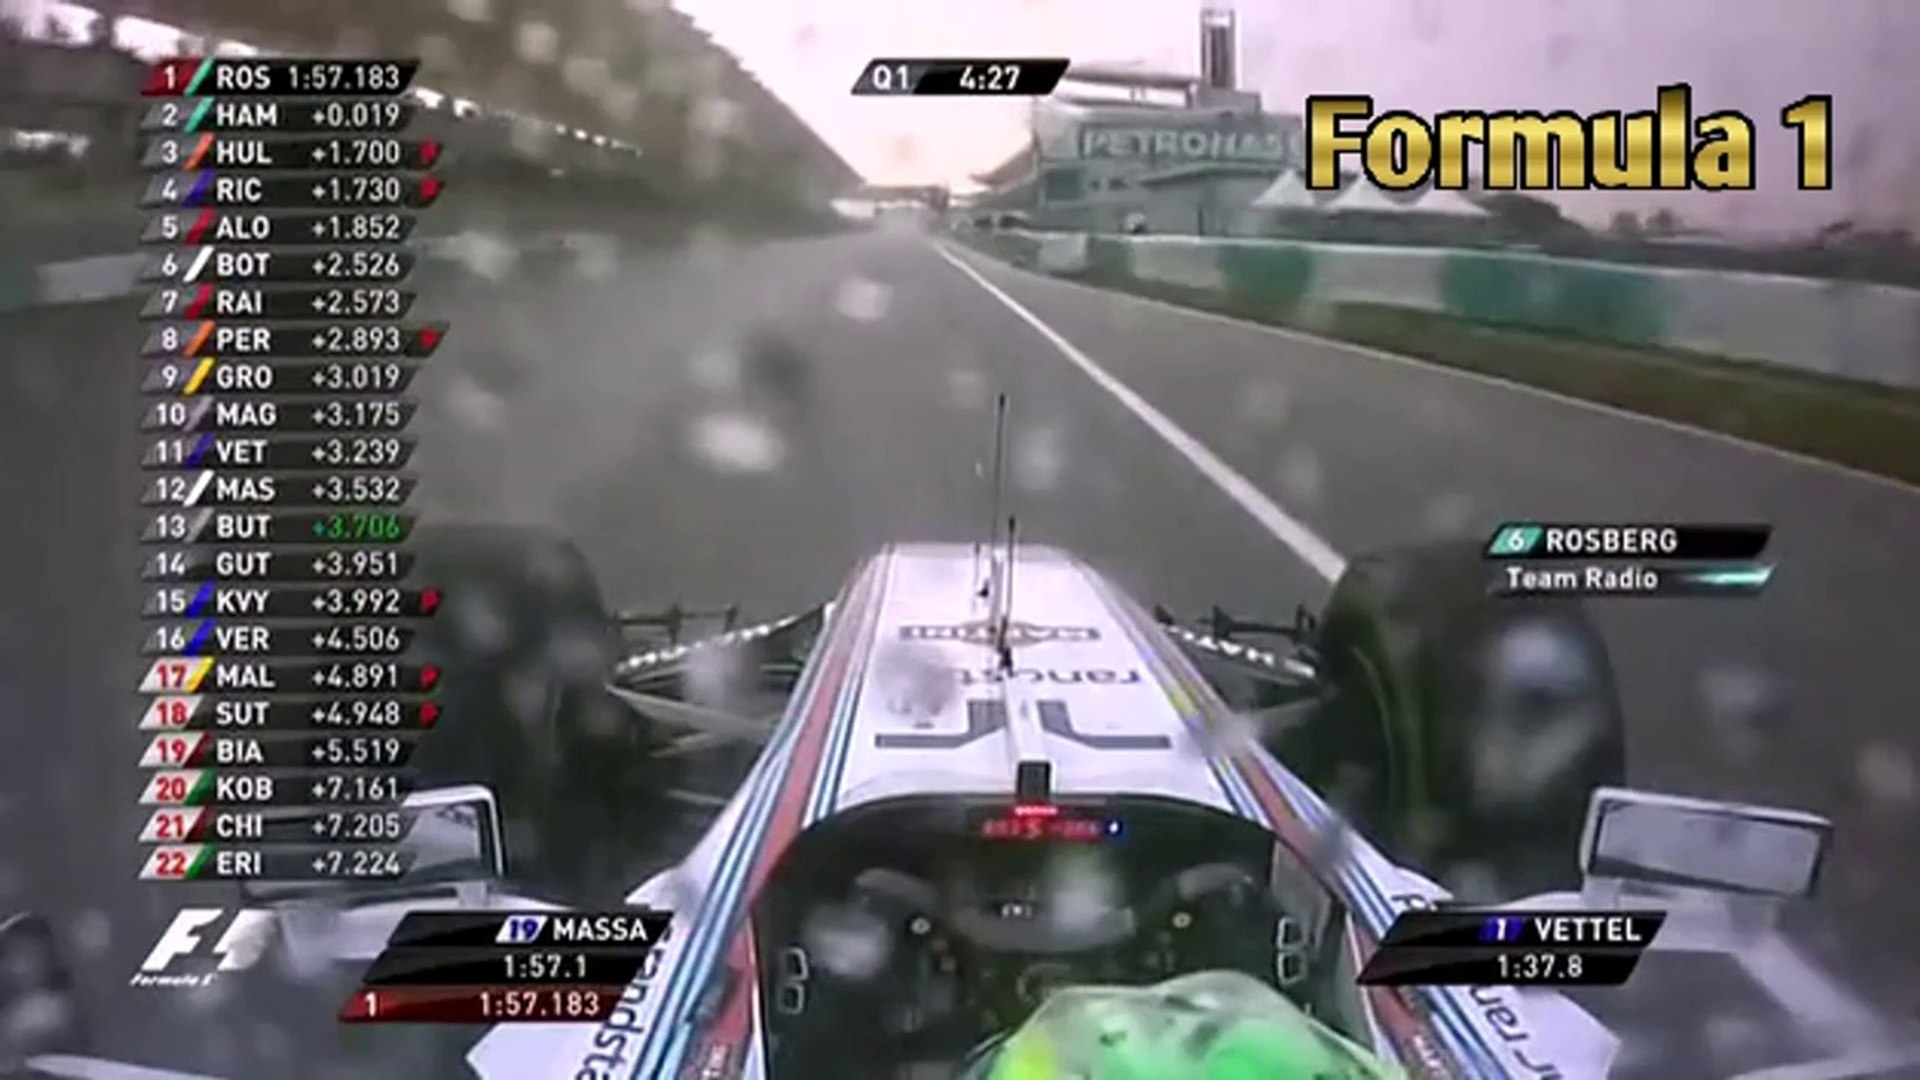 Formula 1 - Malaysian Grand Prix - Qualifying Q1 29-03-2014